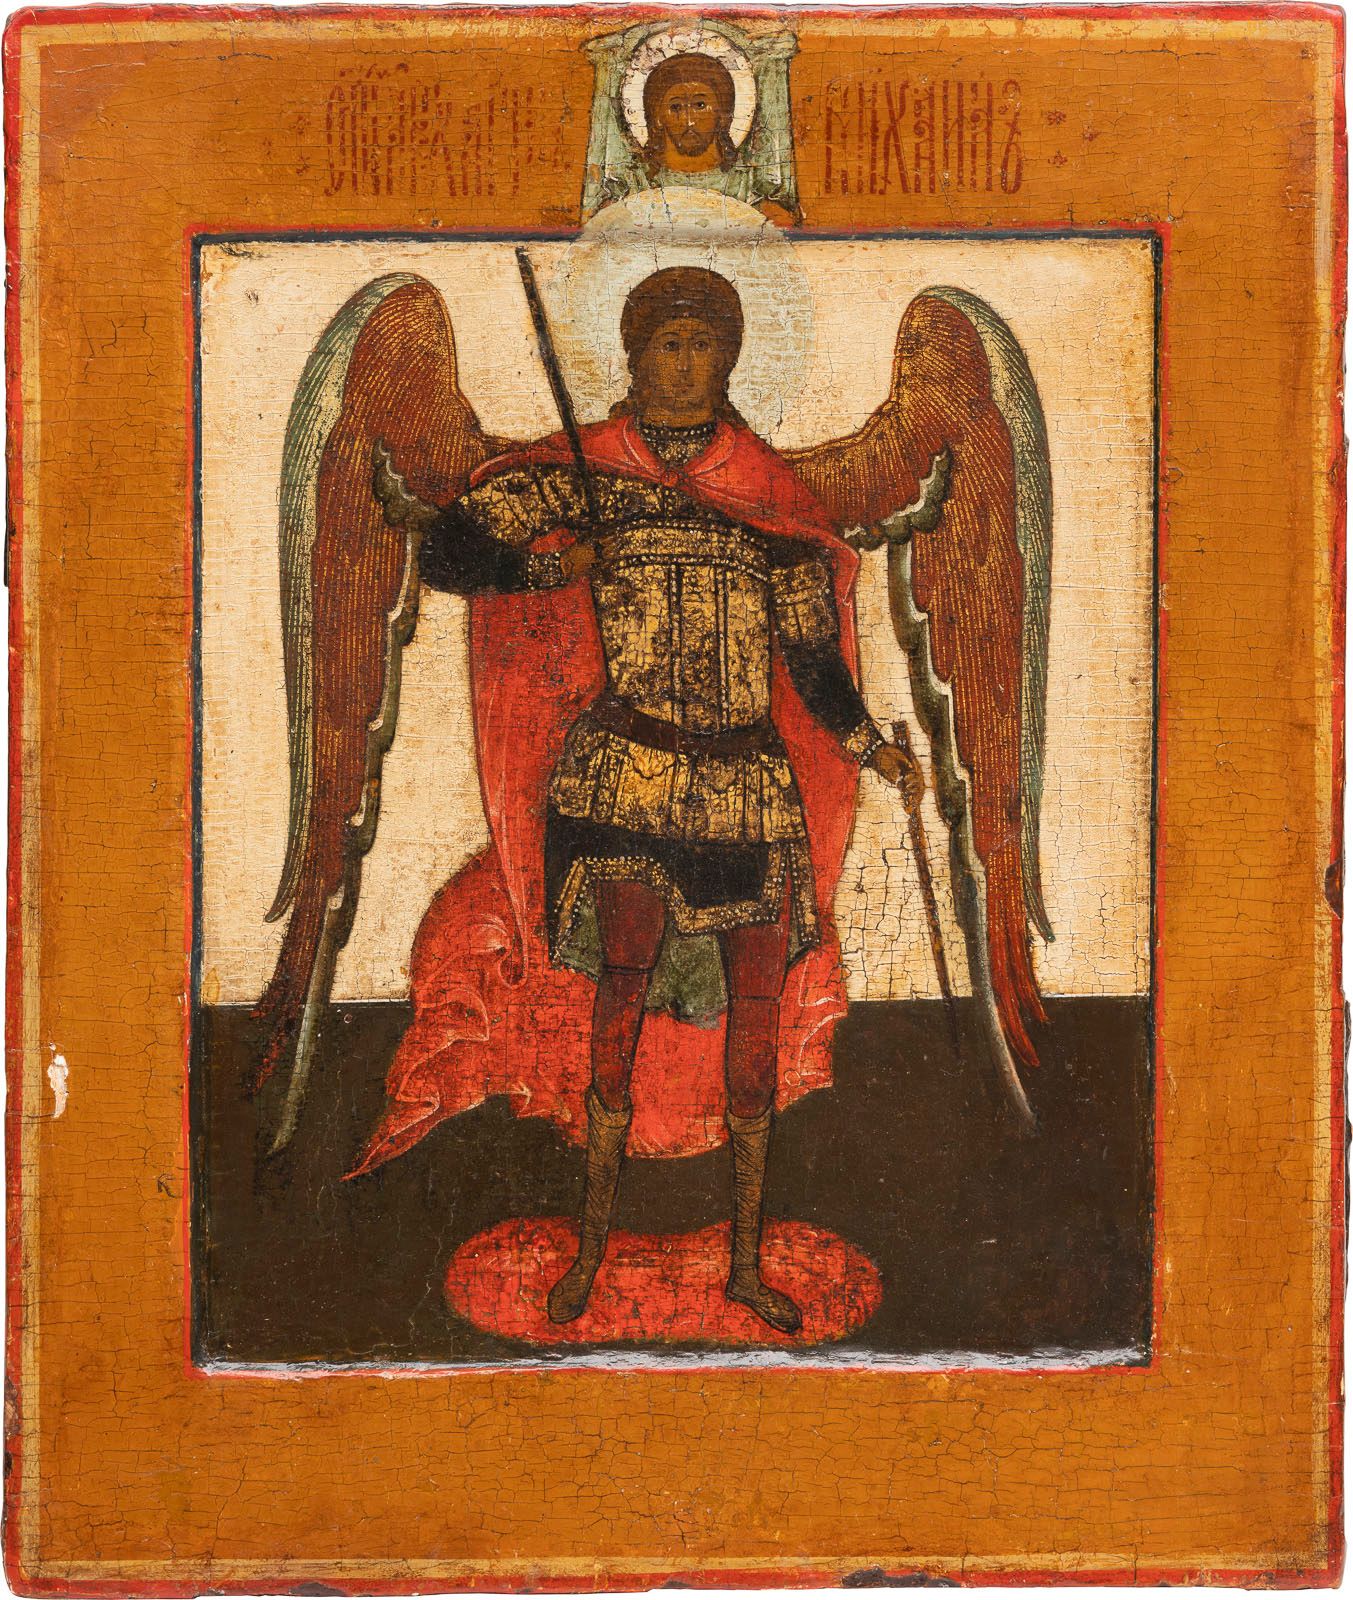 AN ICON SHOWING THE ARCHANGEL MICHAEL 显示米歇尔大主教的圣像 俄罗斯，17世纪 木板上的淡彩画，带有科夫切格。站立，身穿护&hellip;